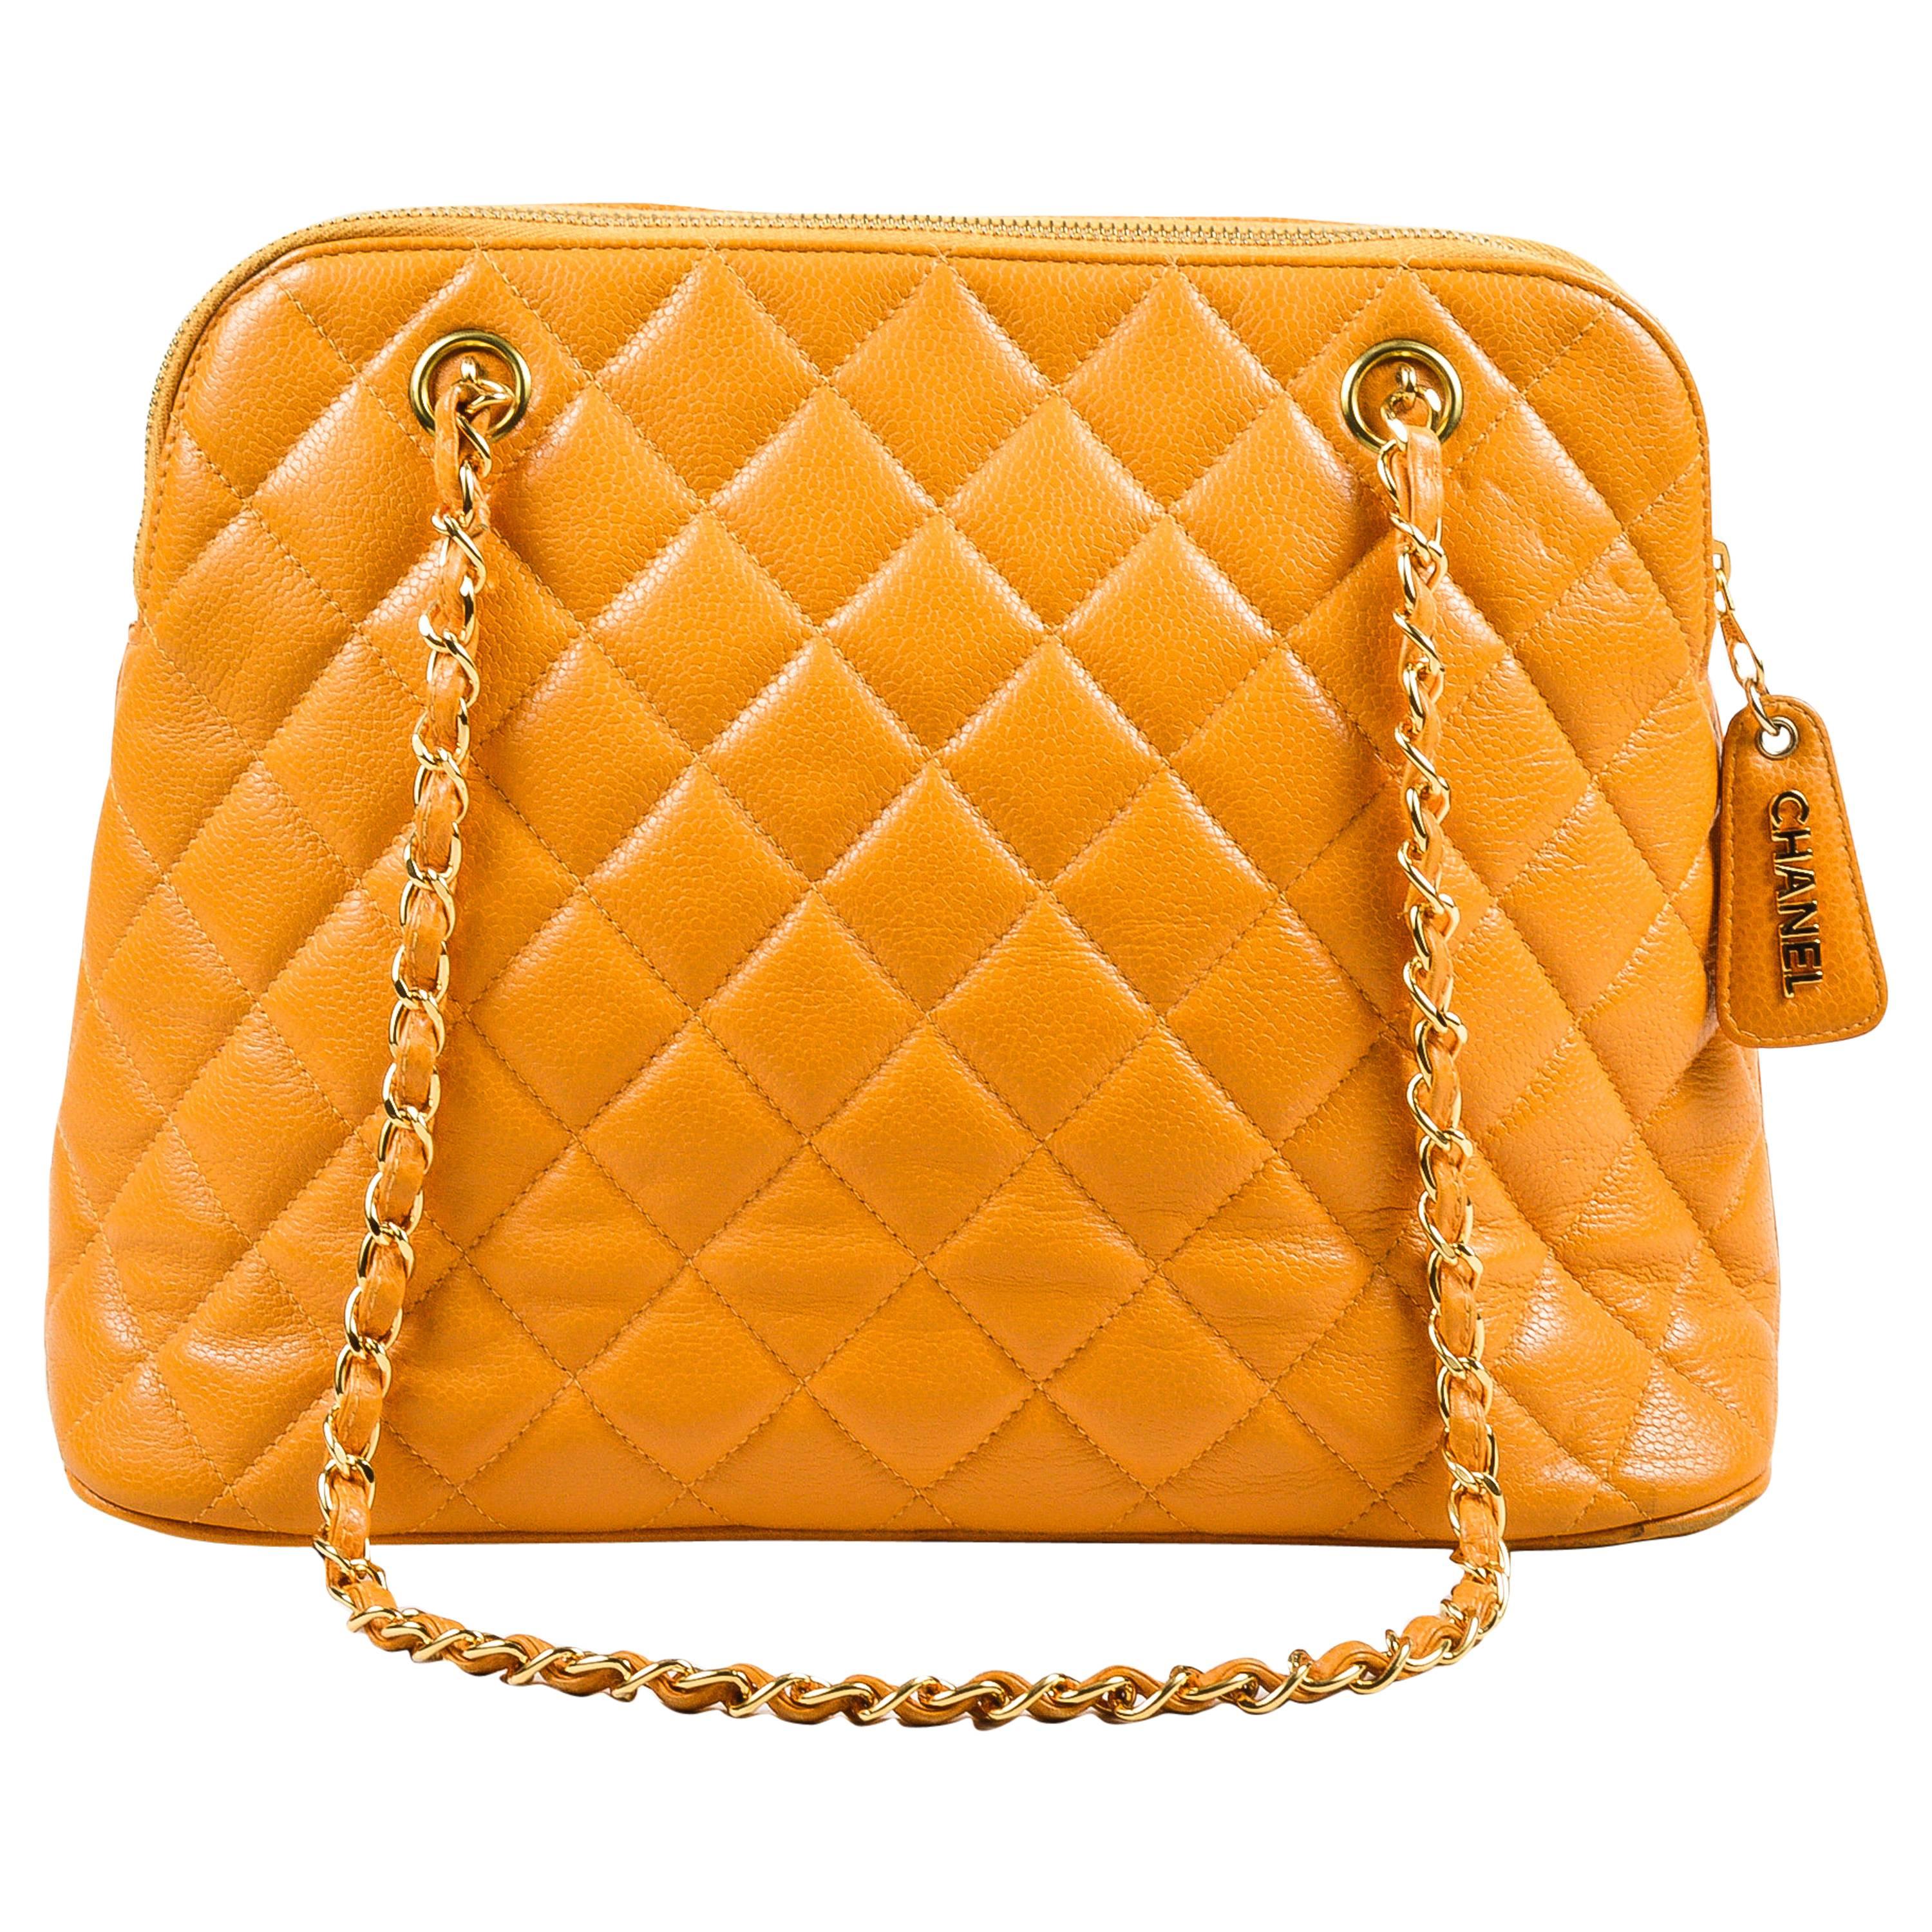 Vintage Chanel Orange Quilted Caviar Leather Quilted Shoulder Bag For Sale